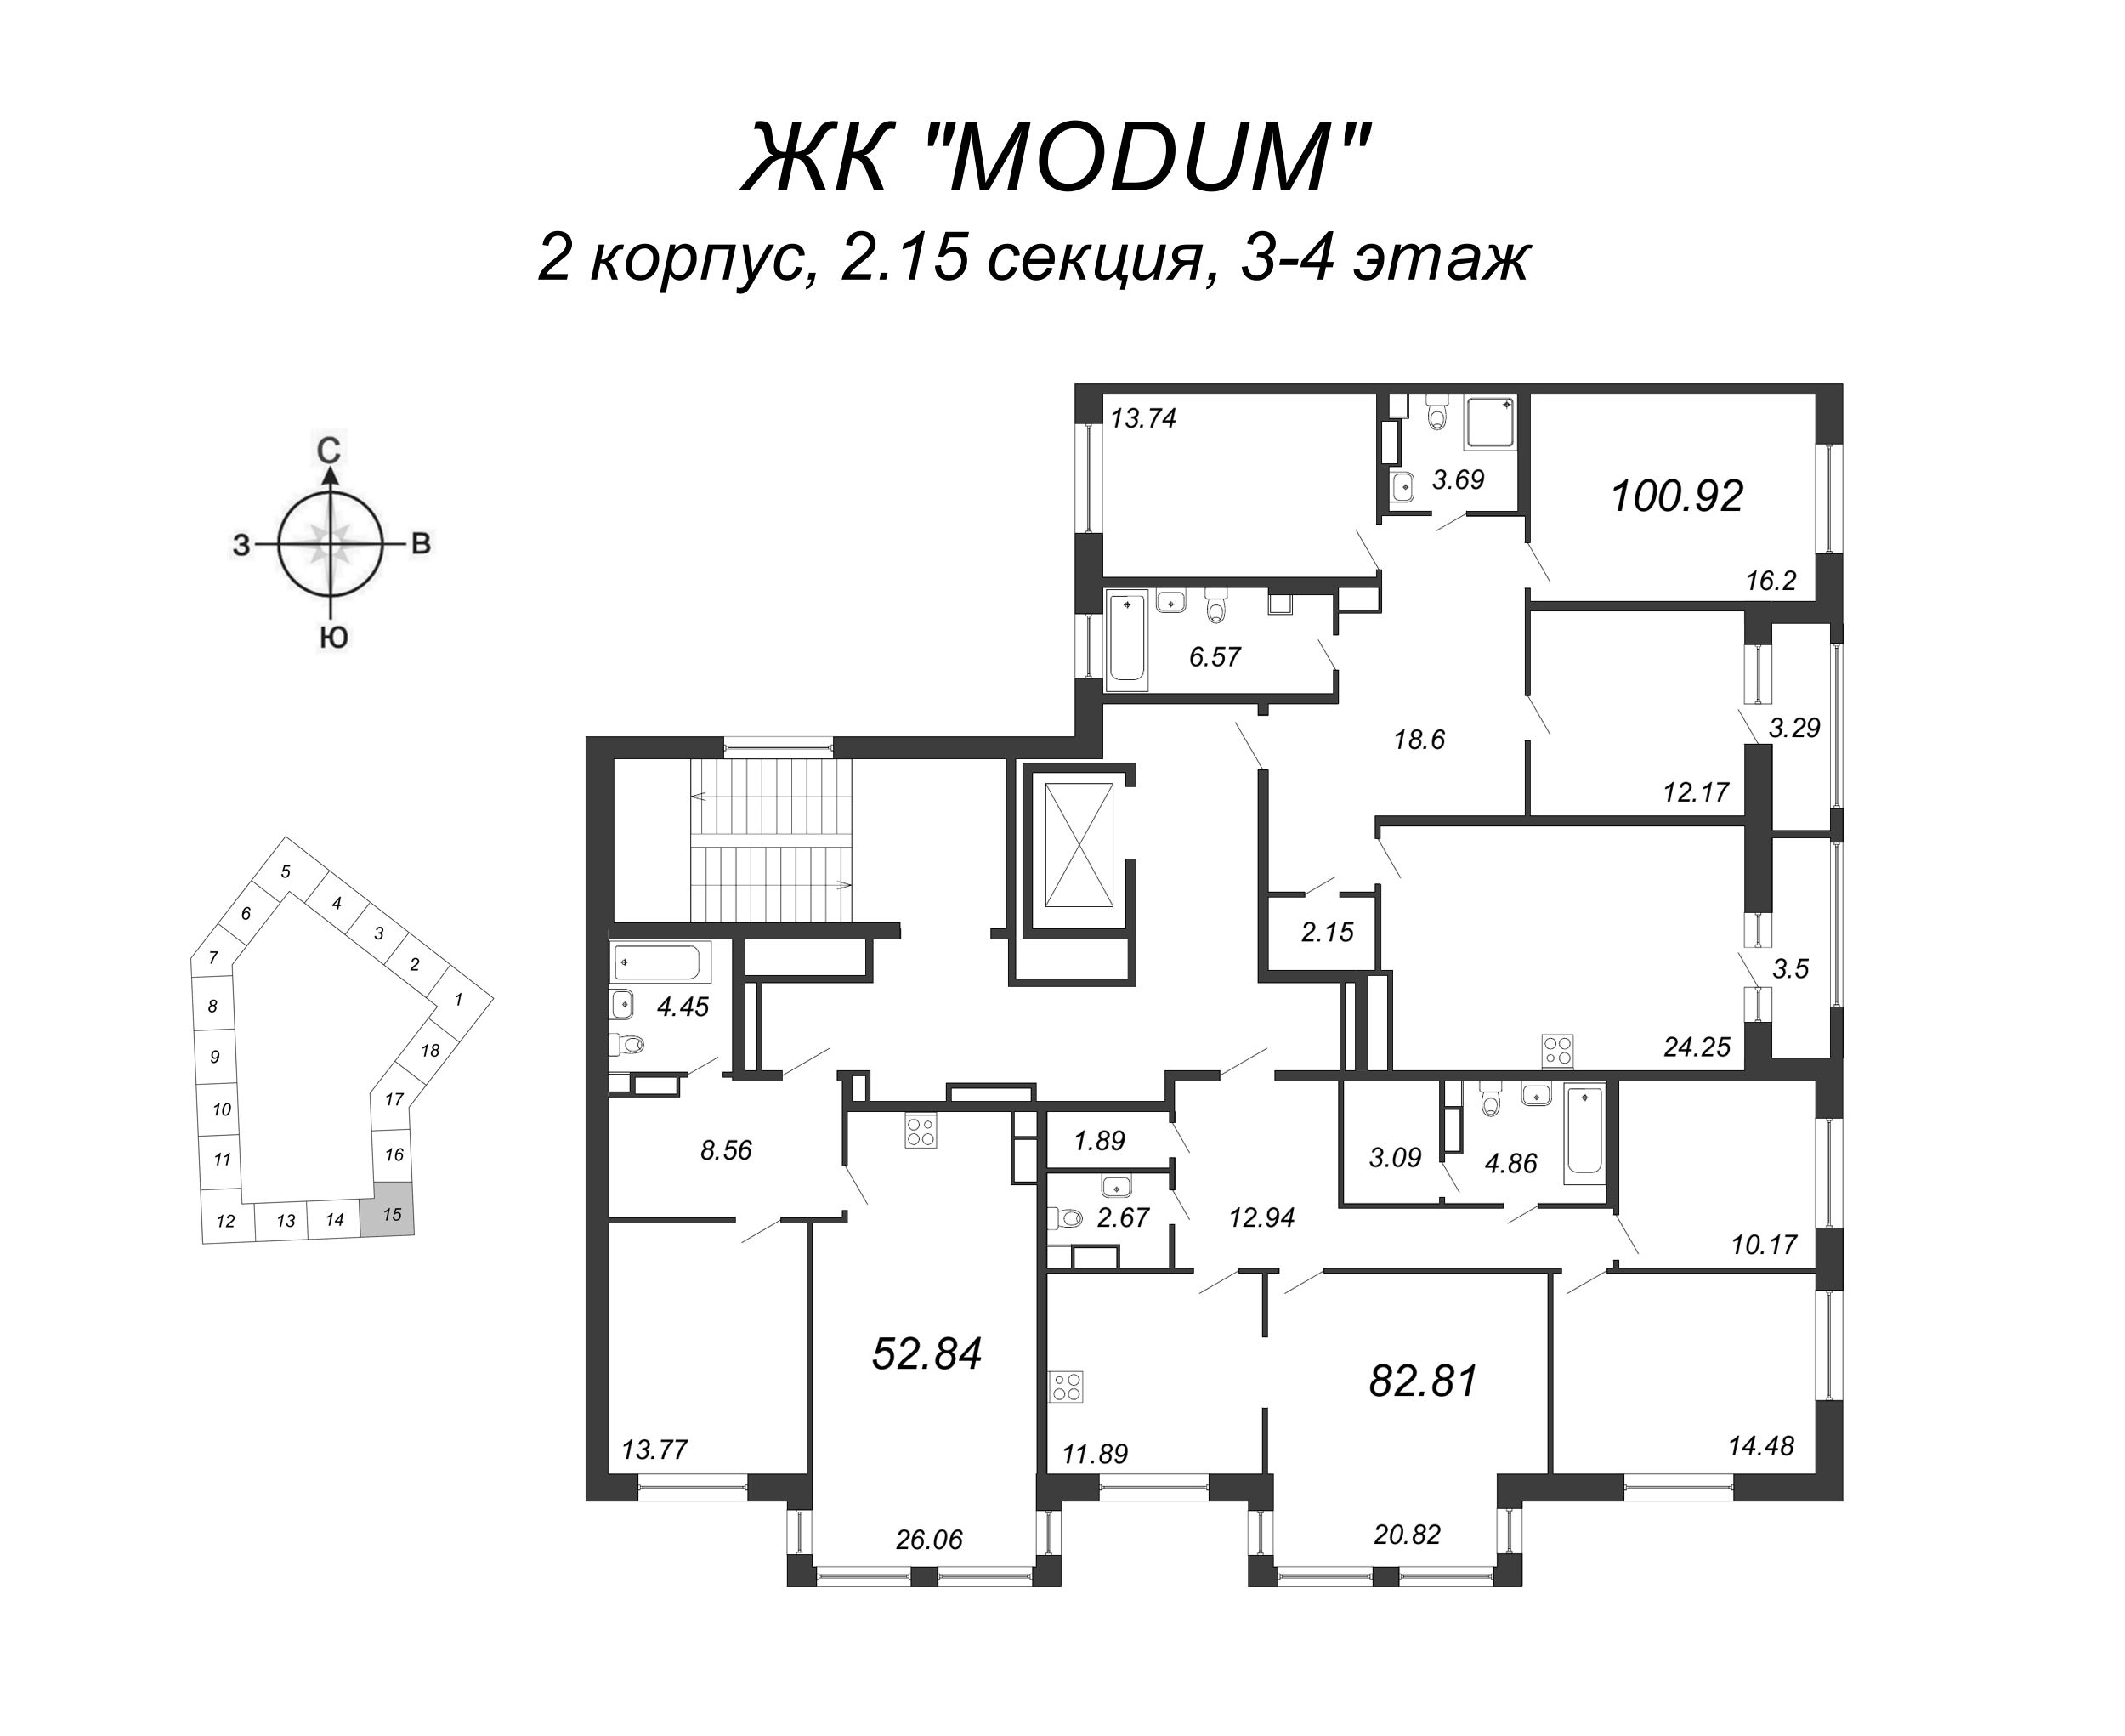 2-комнатная (Евро) квартира, 52.84 м² в ЖК "Modum" - планировка этажа